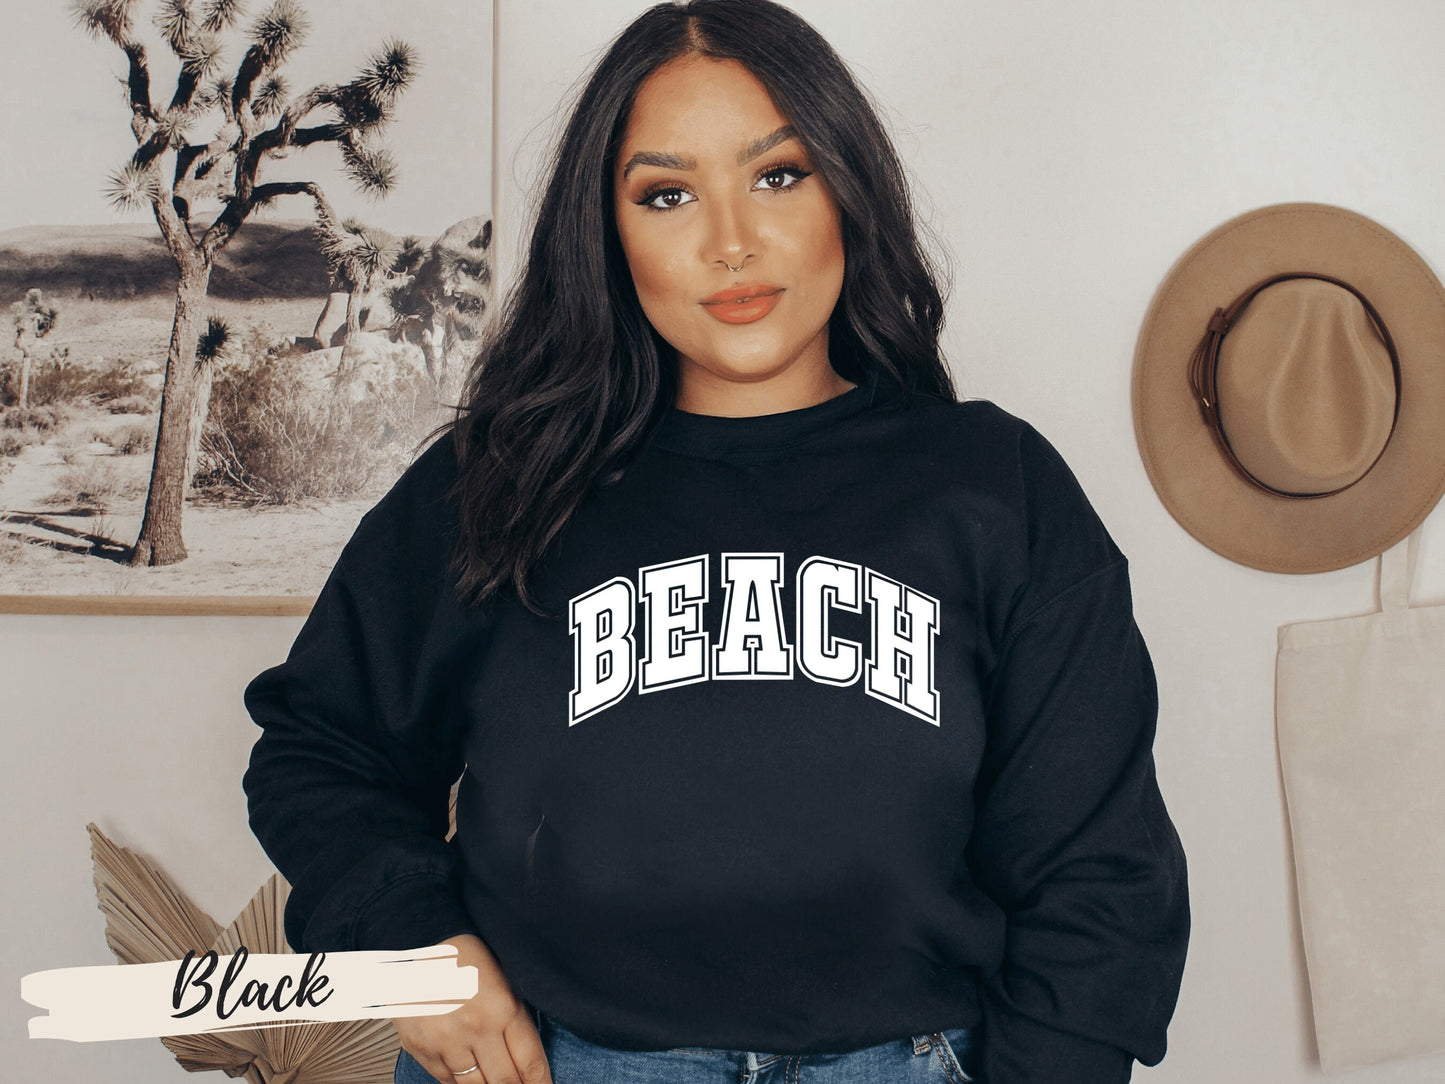 Beach Sweatshirt, Beach Sweater